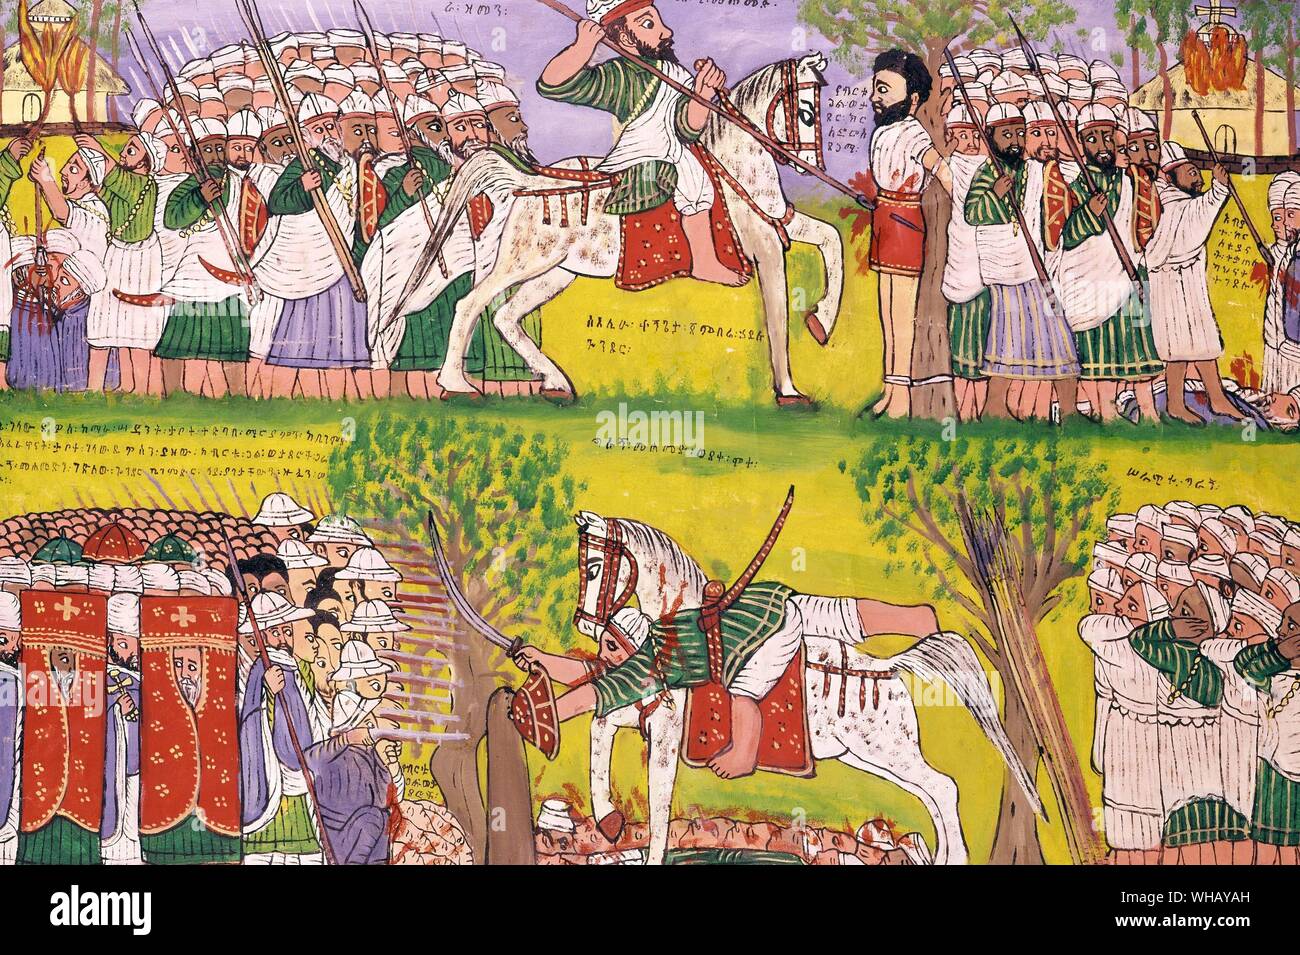 Der Sturz und Tod von Ahmed Gran (1528-1540), Aufnahme von einem portugiesischen Musketier. Ahmed Gran war wahrscheinlich die heftigsten muslimischen Krieger der Christen in Äthiopien zu kämpfen. Er war ein Krieger aus dem 16. Jahrhundert, deren Zuständigkeiten gesagt wurden, Wunder zu sein. Er war unempfindlich gegen Kugeln, und sein riesiges Schwert könnte schwere ein Baum. Er war durch eine kombinierte Portuguese-Ethiopian Armee getötet. Hölzerne Verkleidung am Anfang dieses Jahrhunderts gemalt von Kegneketa Jemlieri Hailu von Gondar. Die African Adventure - eine Geschichte von Afrikas Entdecker von Timothy Severin, Seite 49. Stockfoto